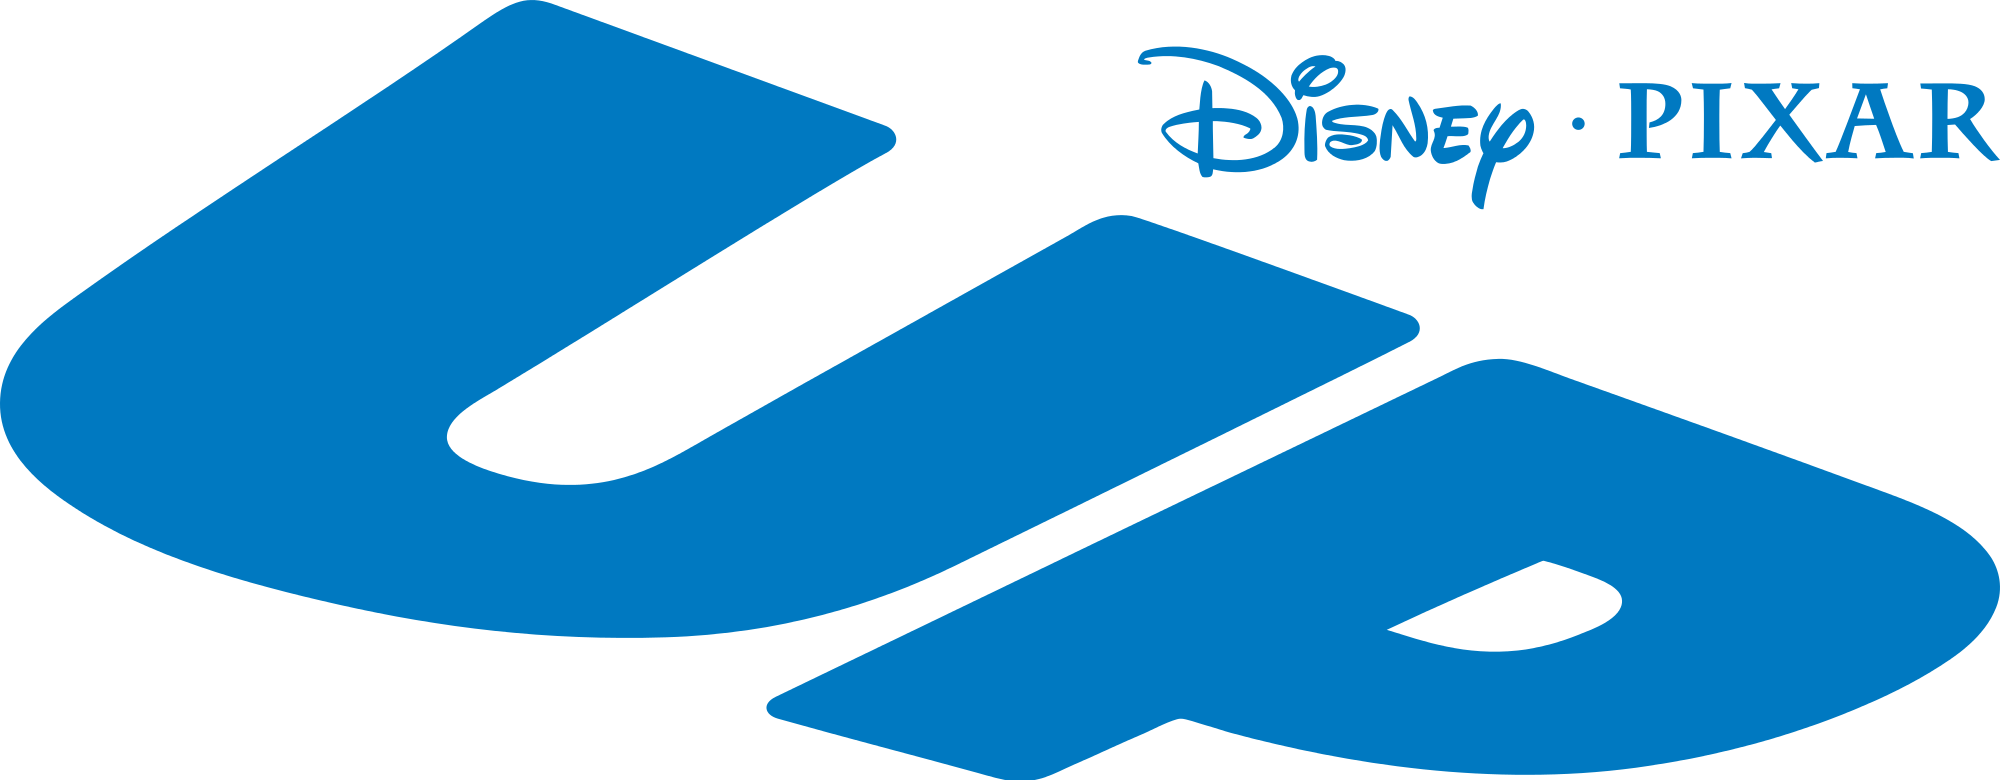 Disney Pixar Up Logo - Up (film)